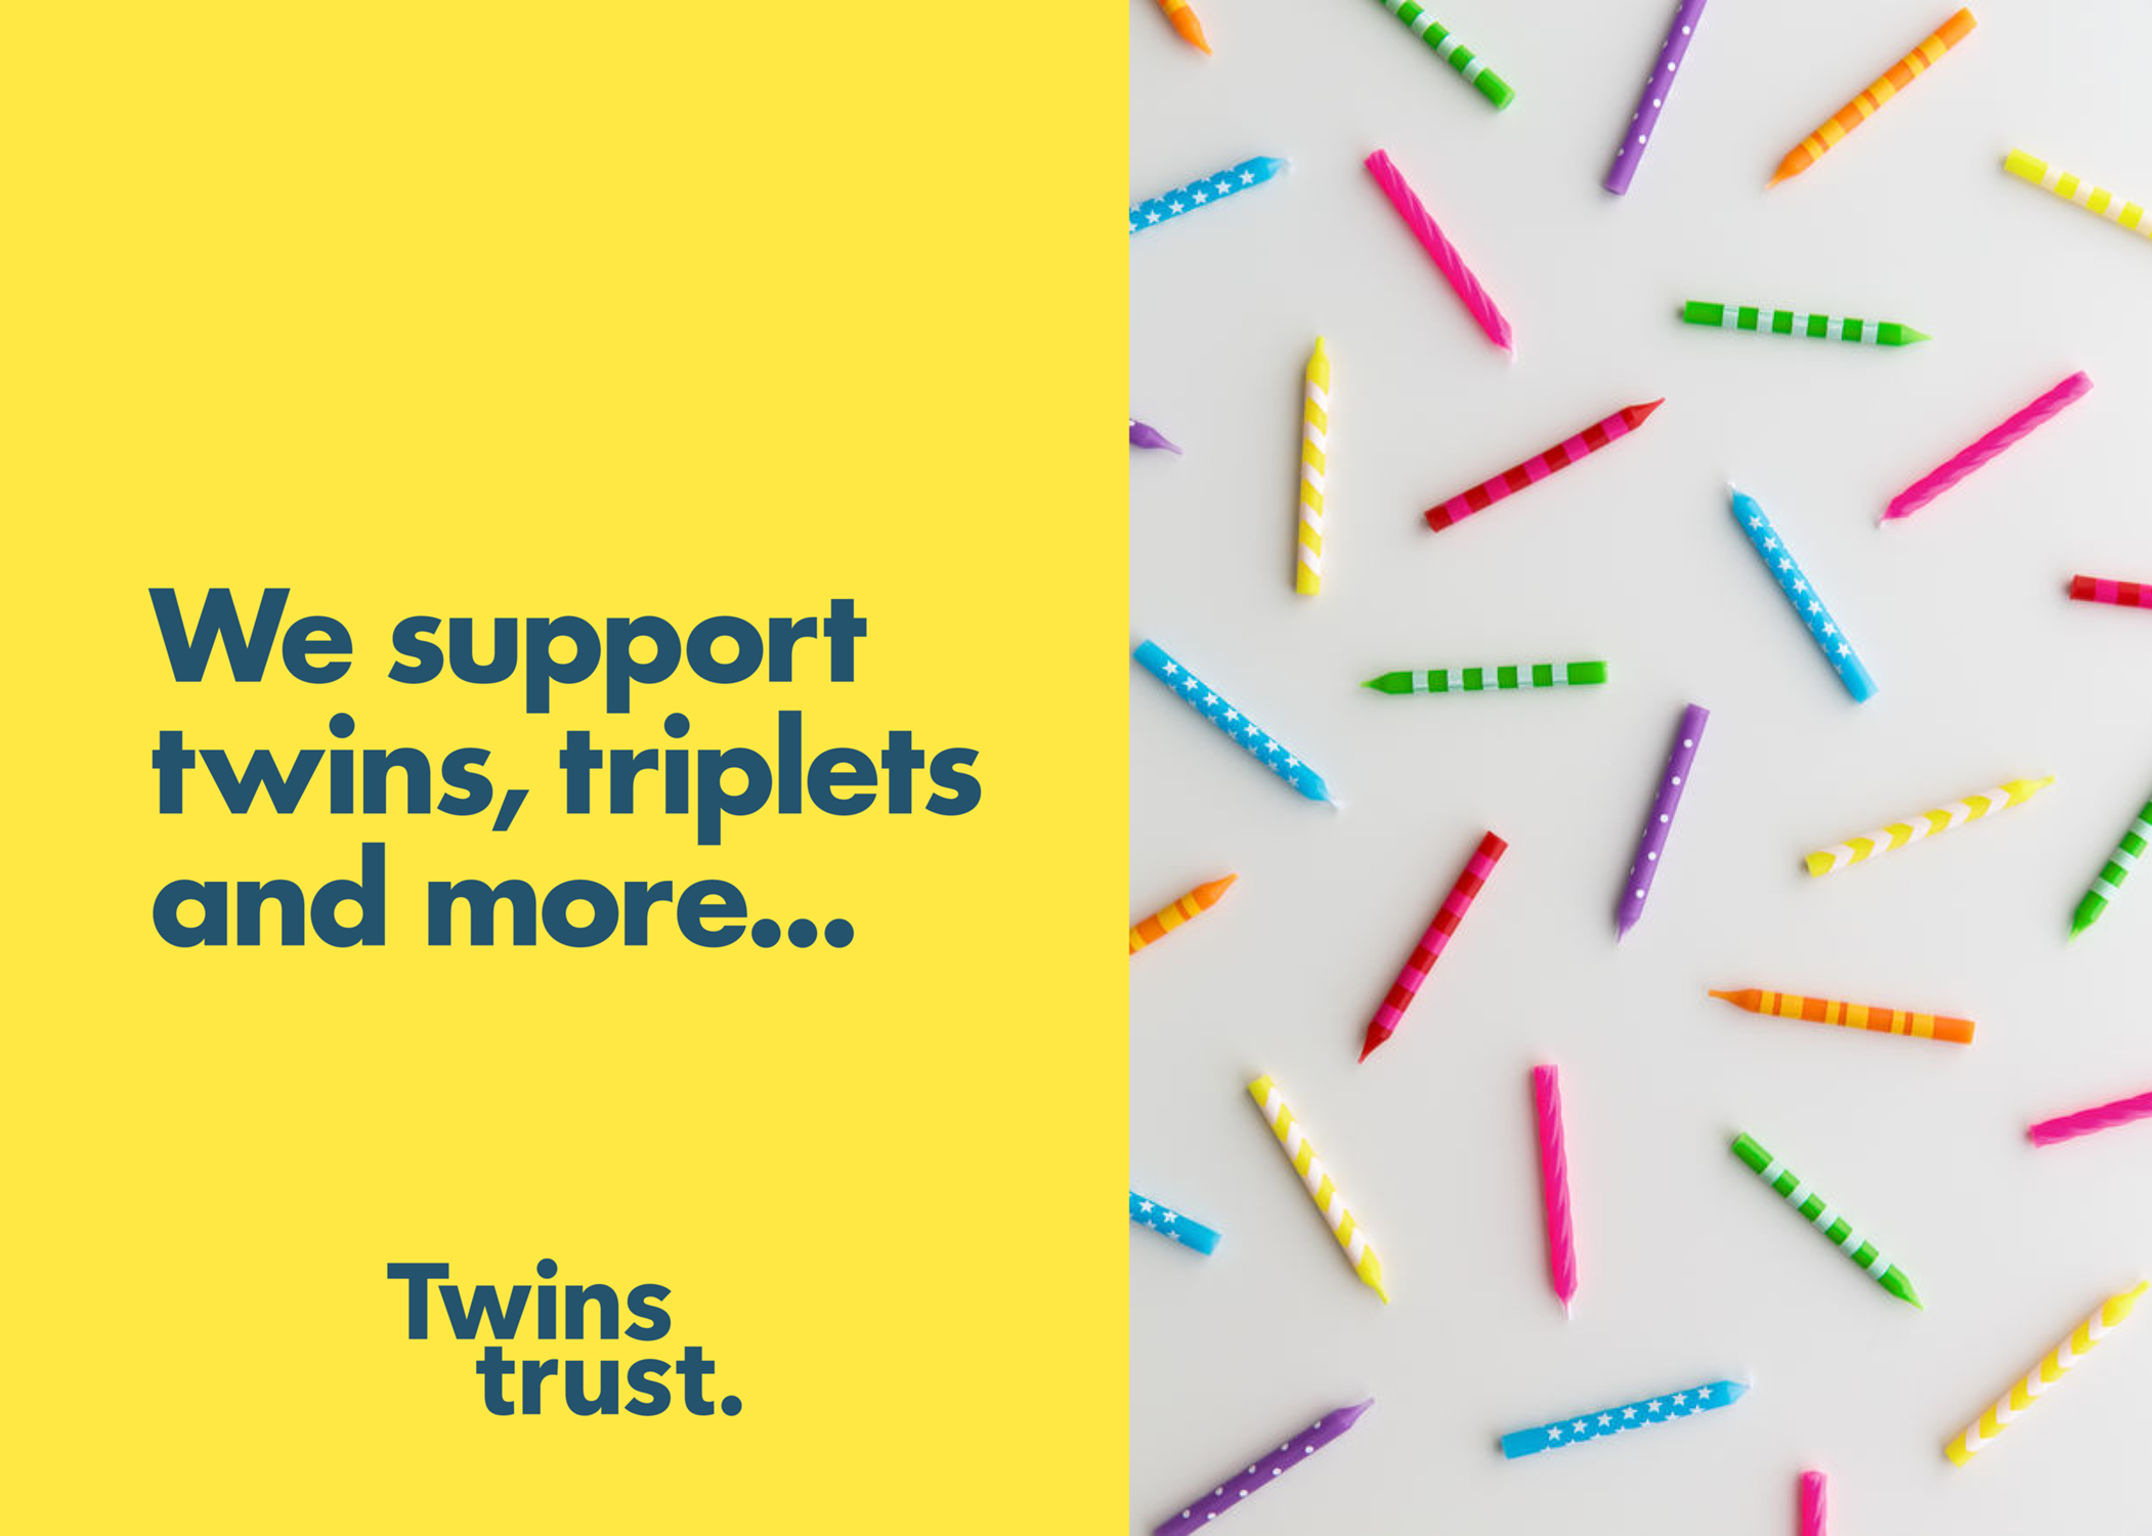 Twins Trust